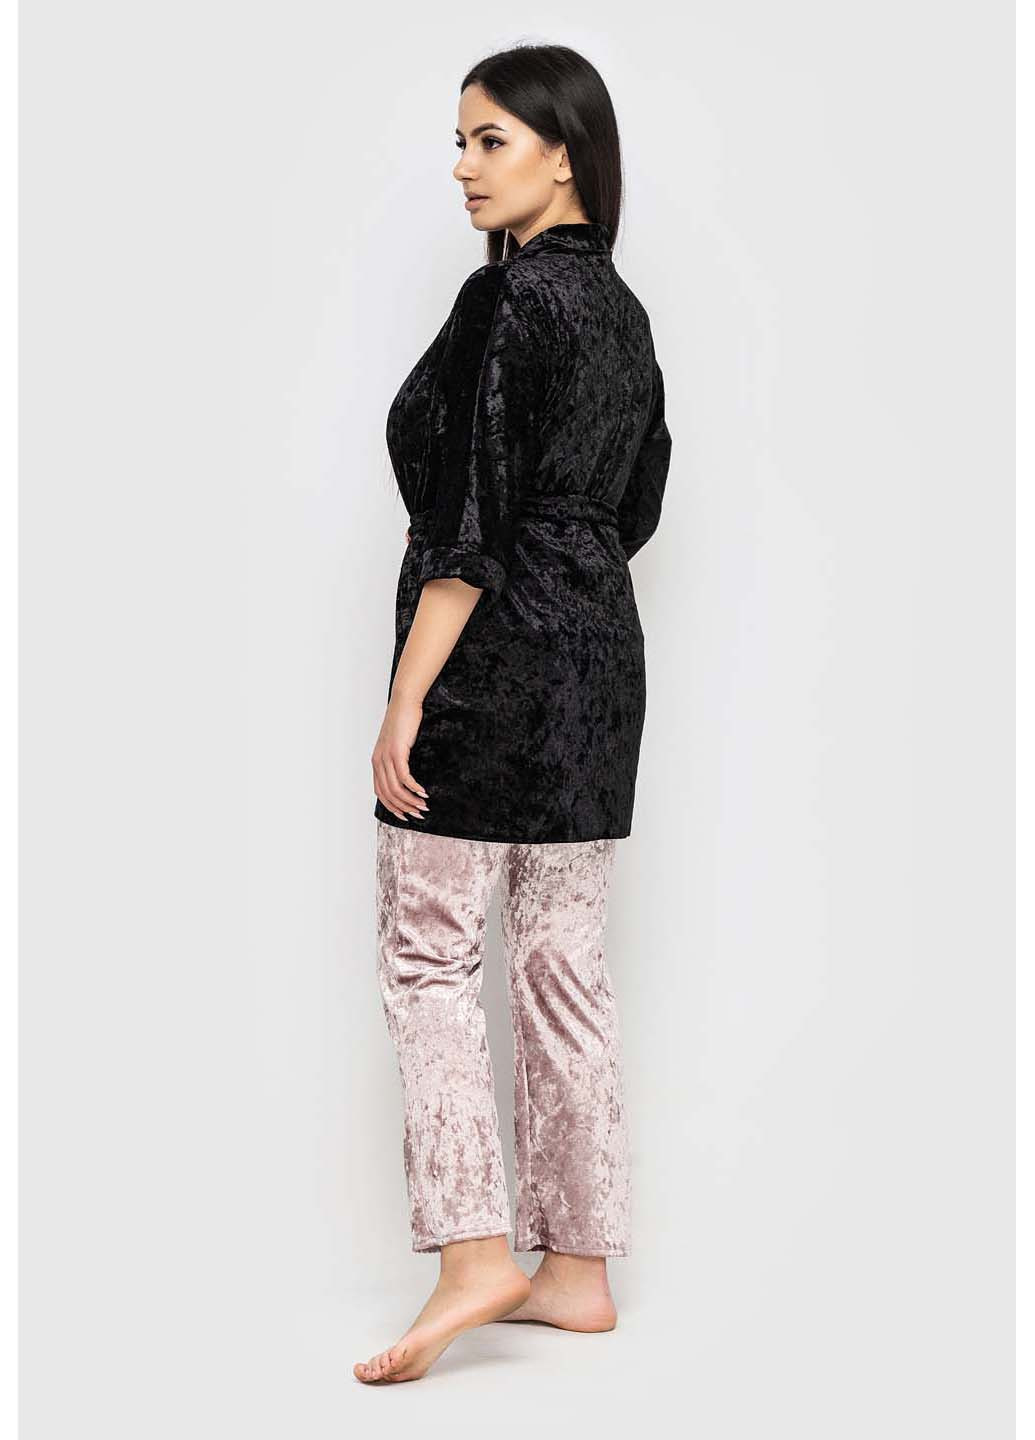 Комбінований демісезонний комплект халат + майка + брюки Ghazel